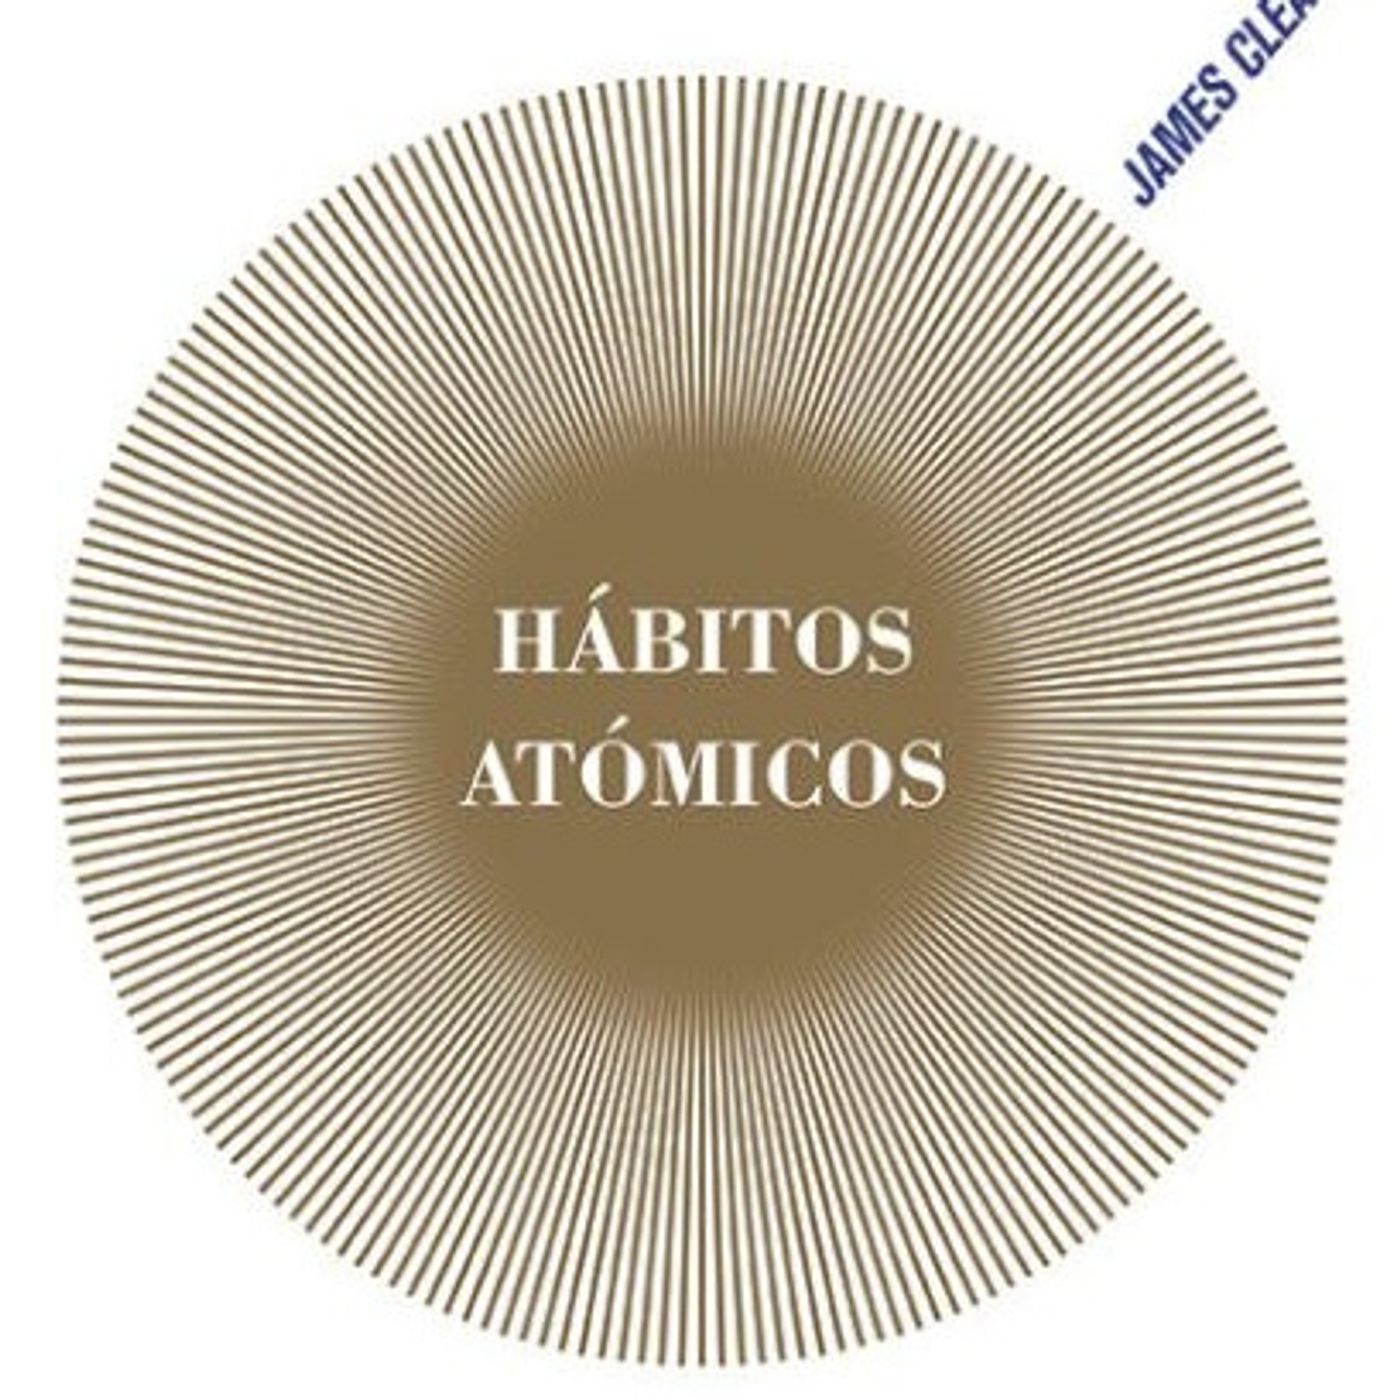 HABITOS ATOMICOS CAPITULO 4 AUDIOLIBRO